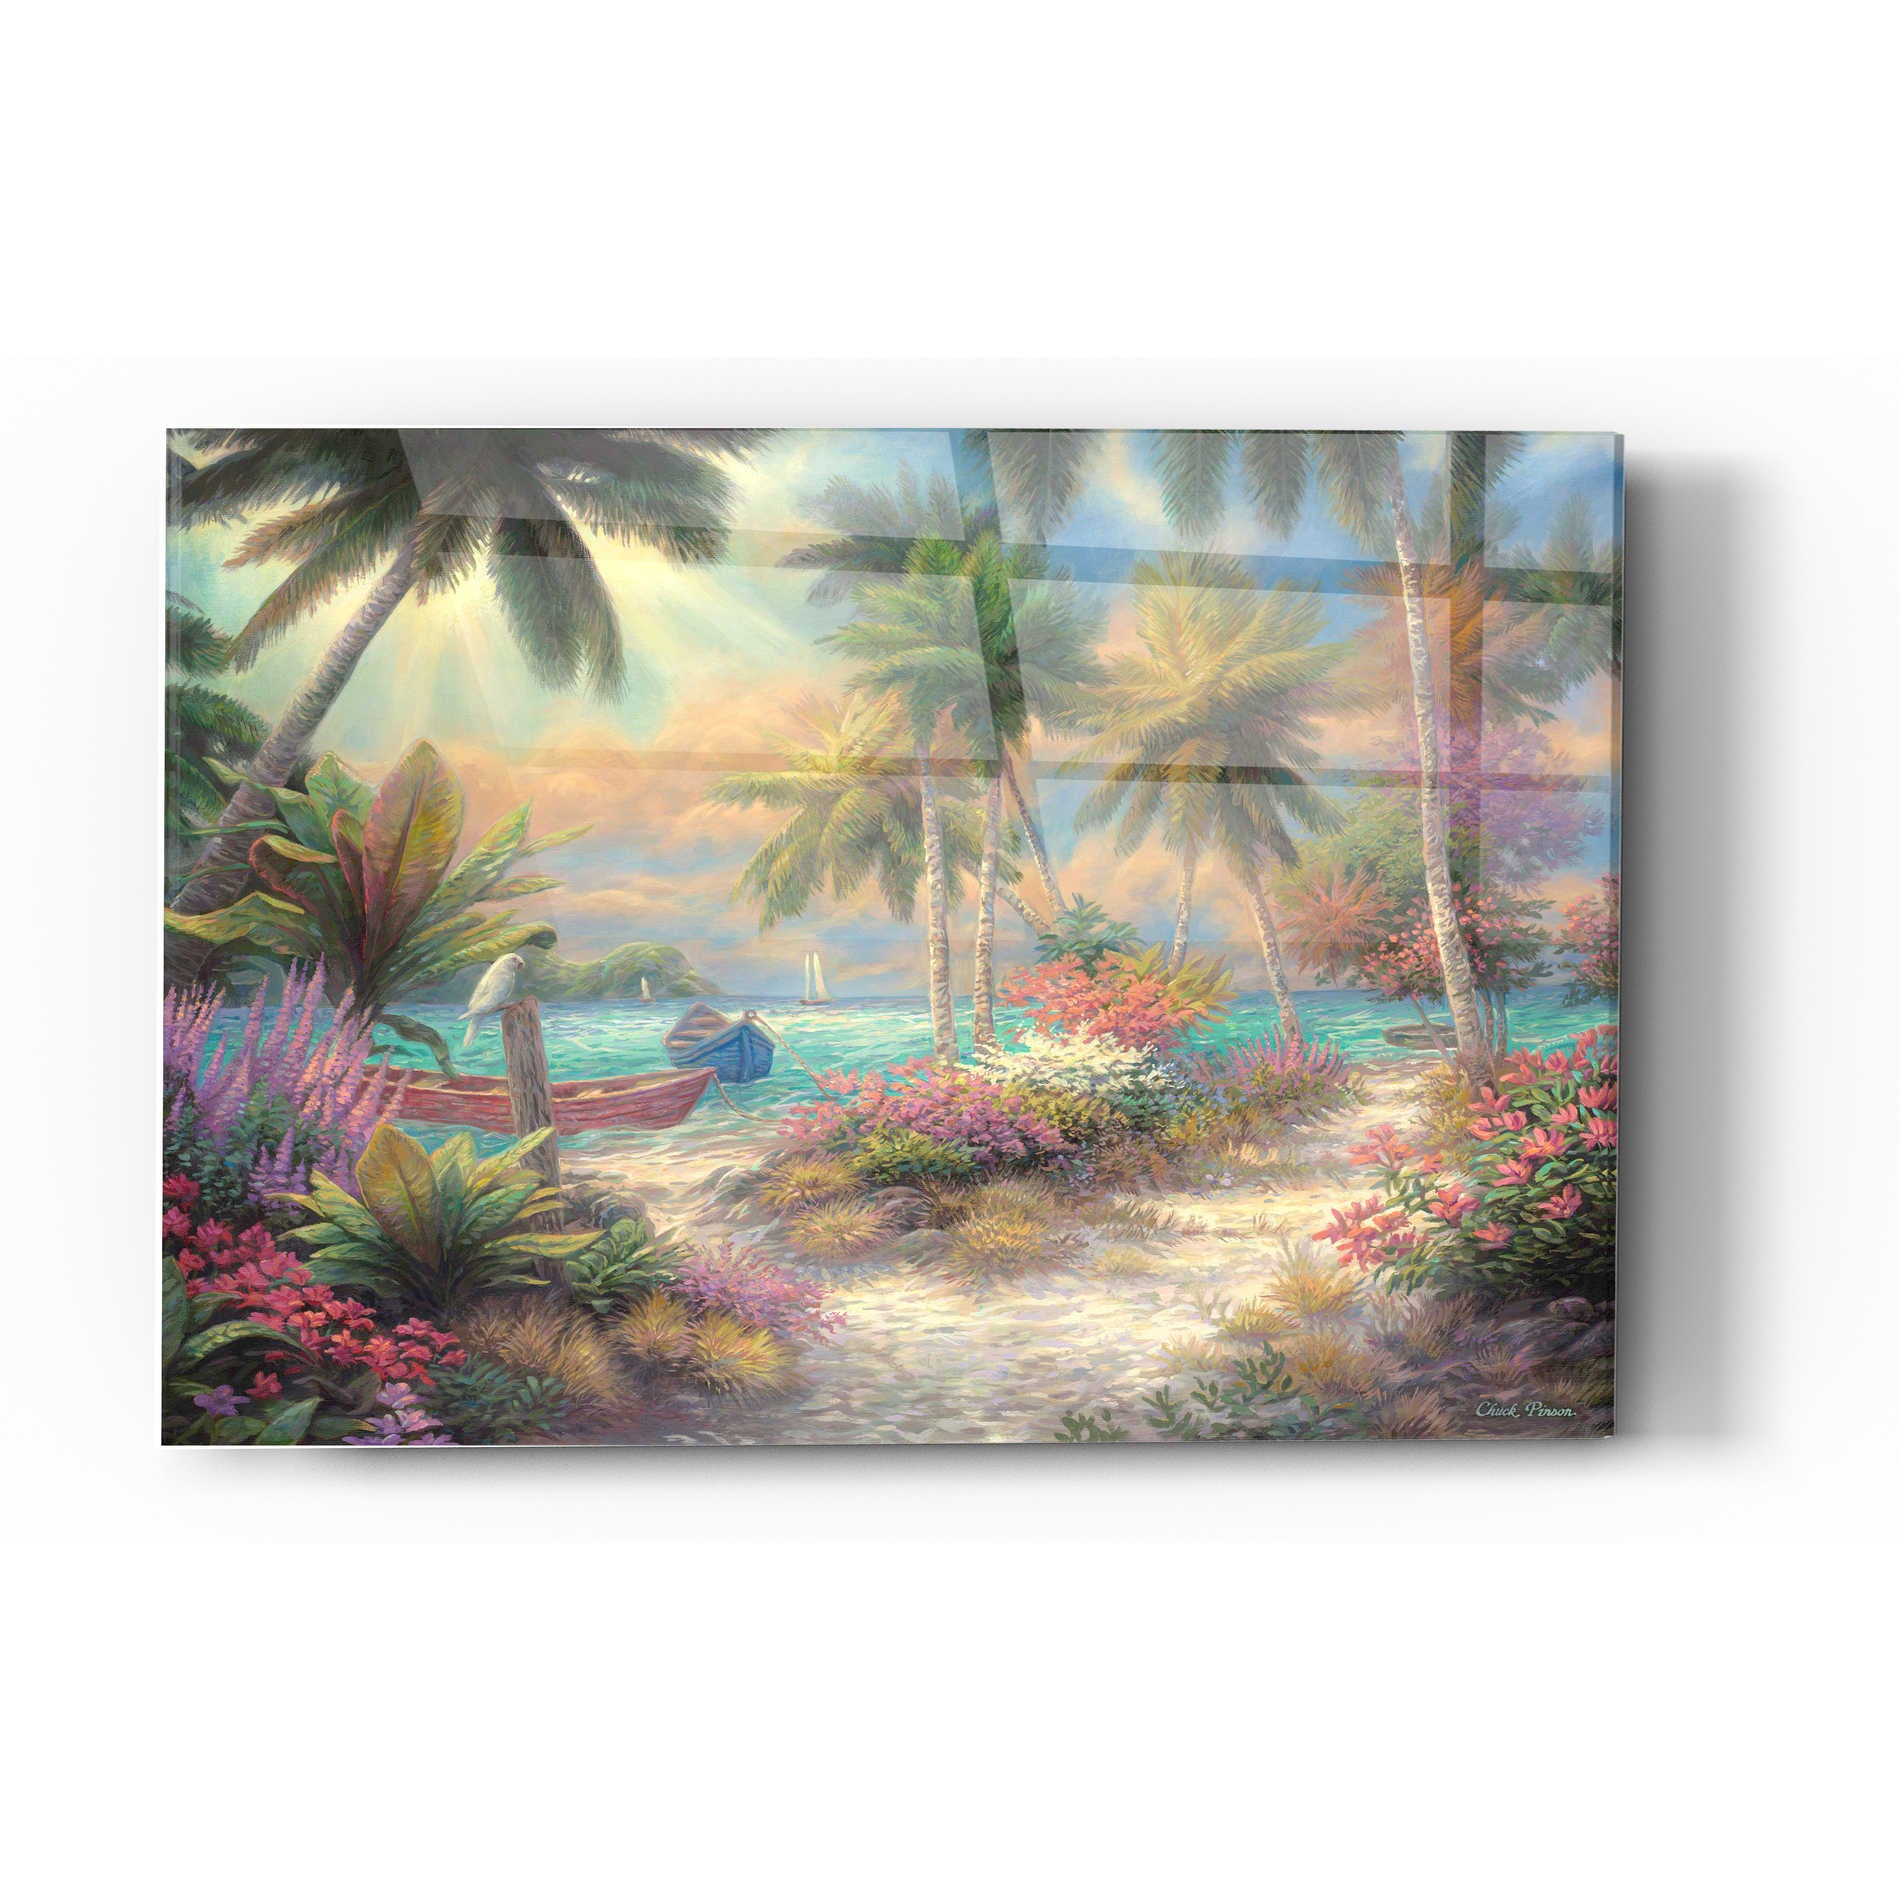 Epic Art 'Isle of Palms' by Chuck Pinson, Acrylic Glass Wall Art,24x36